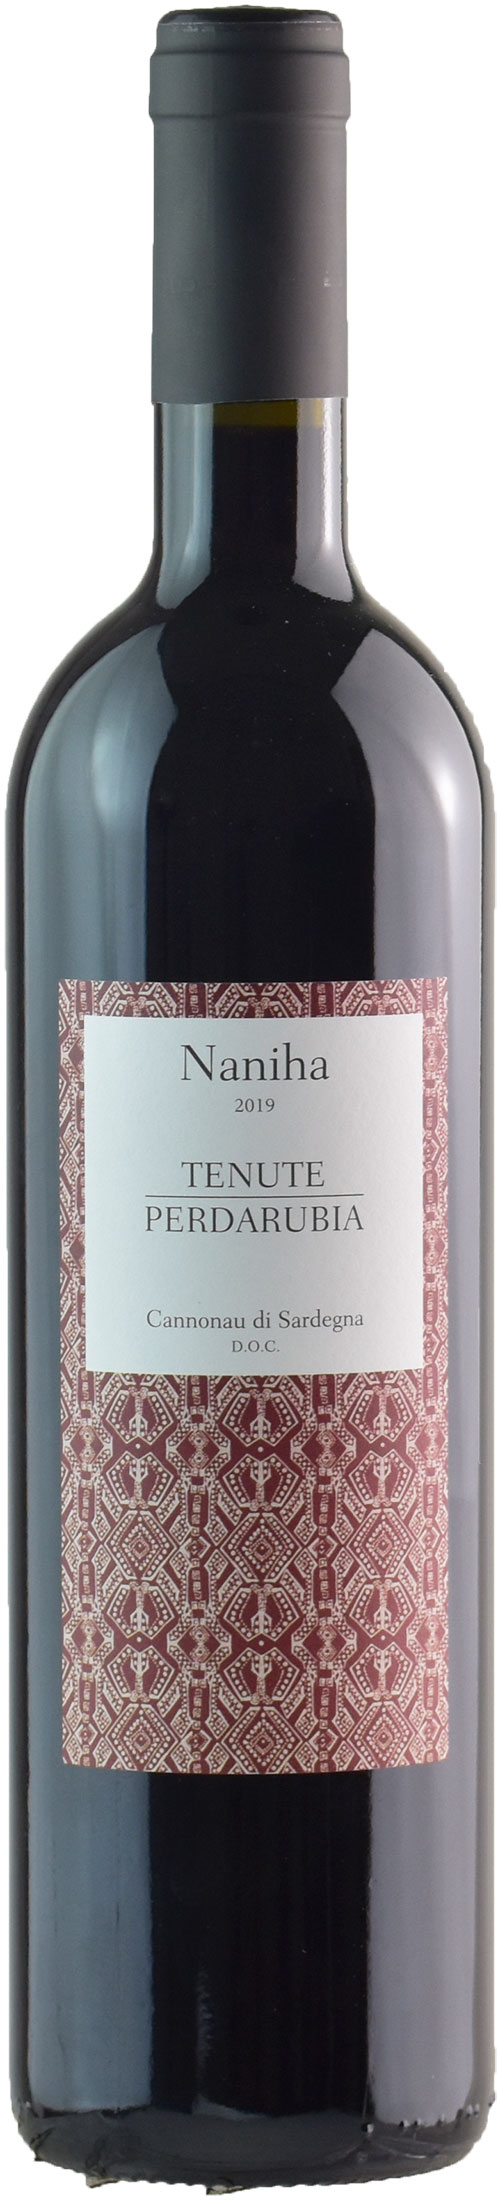 Tenute Perdarubia Cannonau di Sardegna Naniha